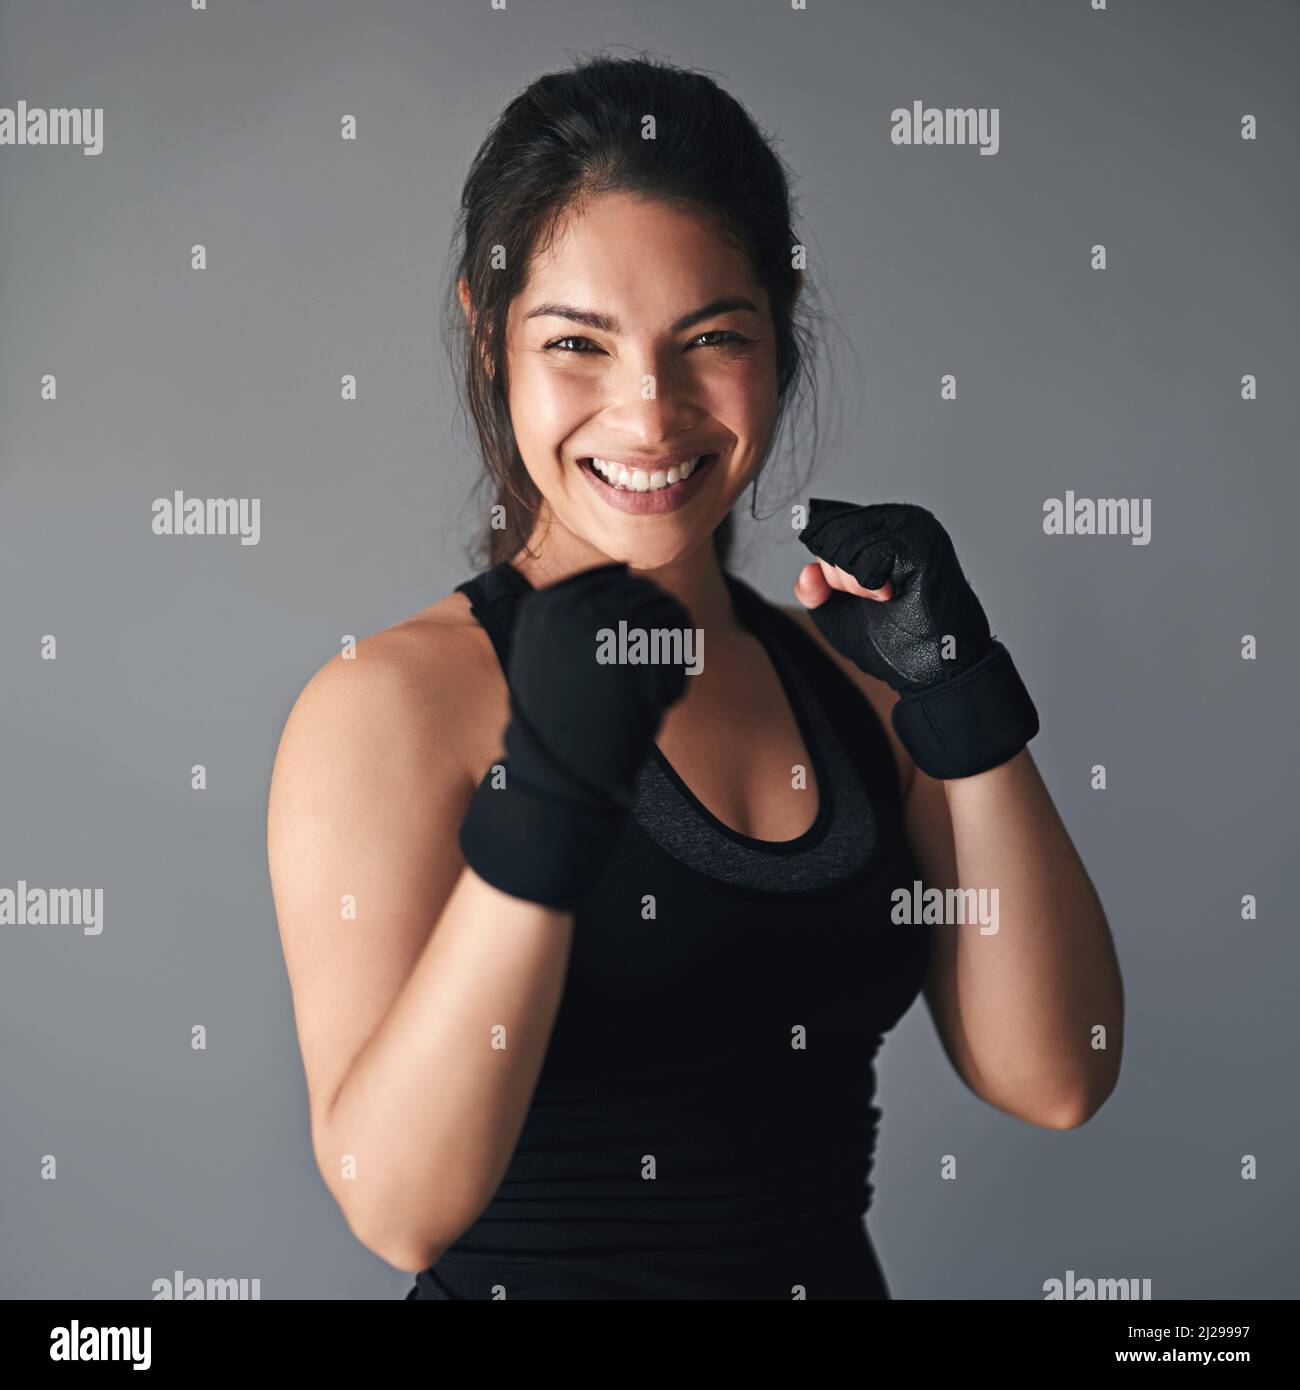 Ses a eu beaucoup de combat en elle. Photo en studio d'un kickboxer féminin sur fond gris. Banque D'Images